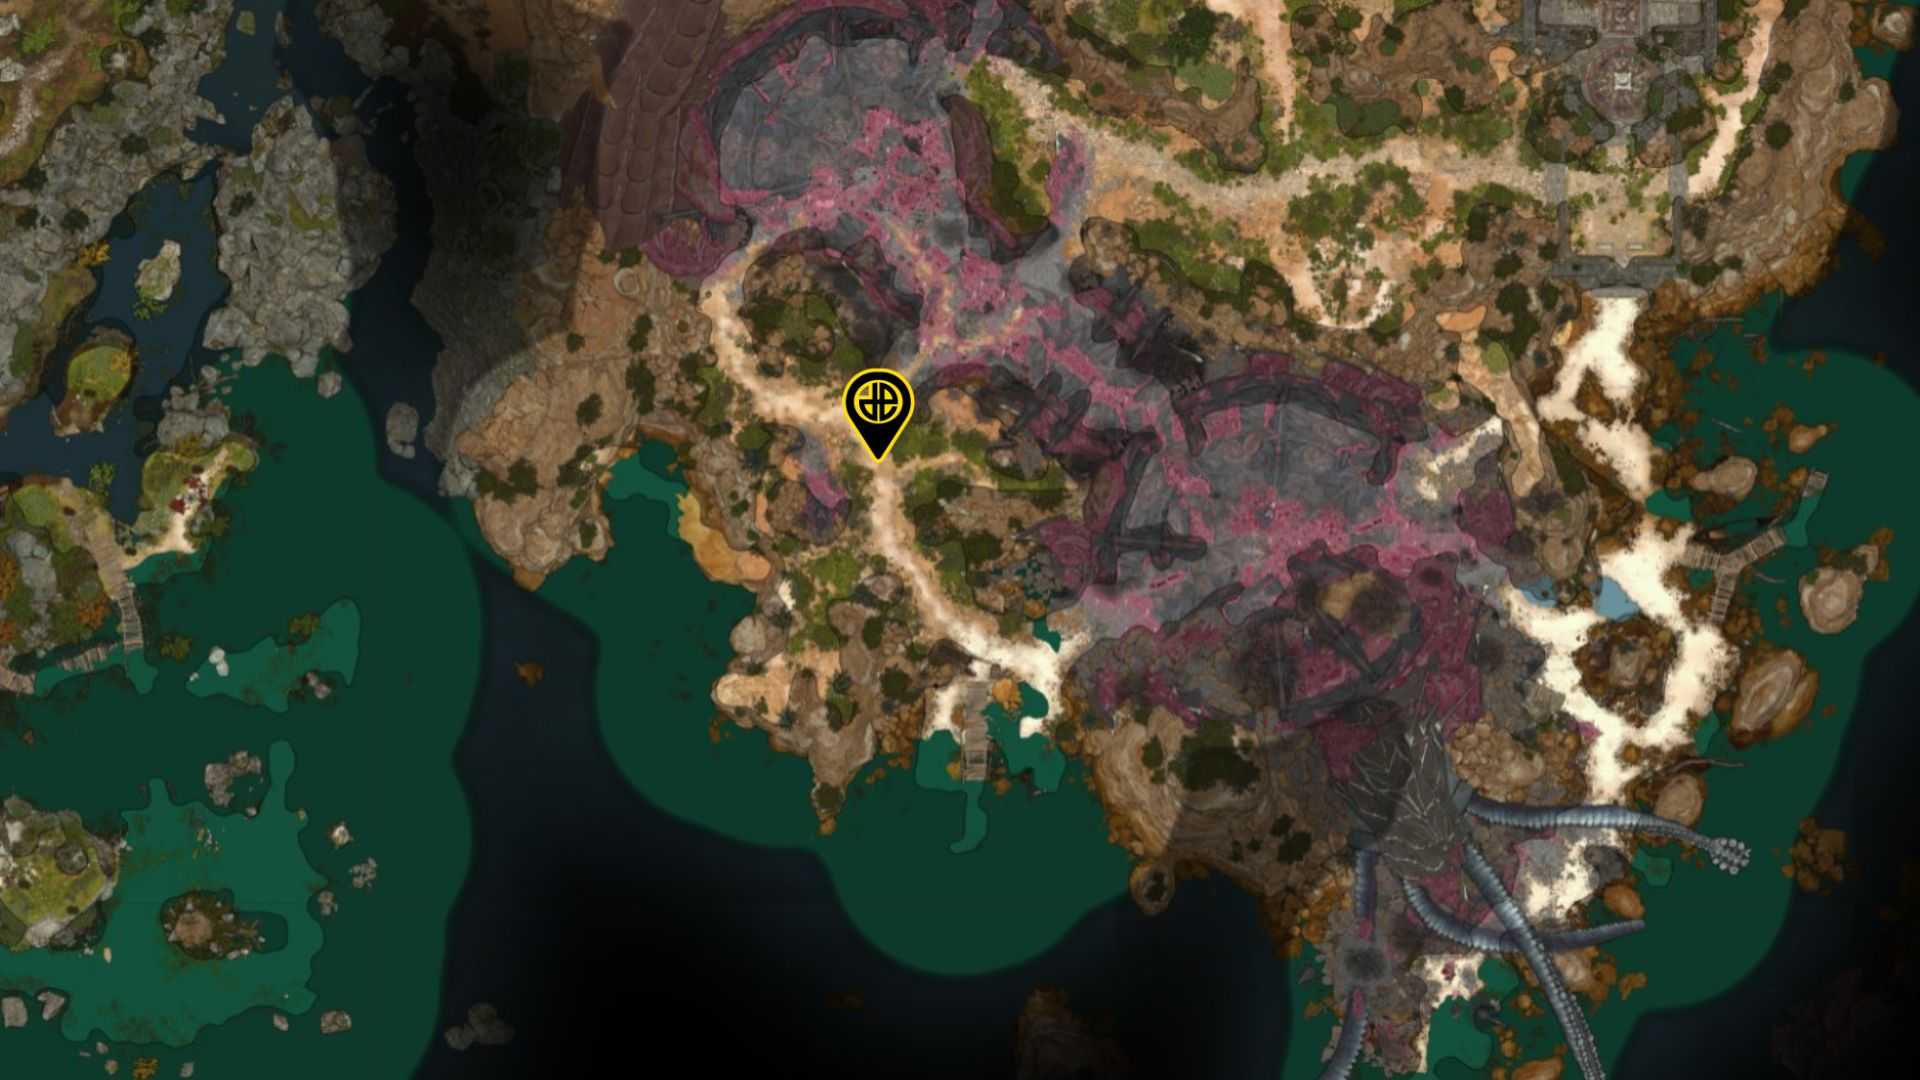 Astarion location in Baldur's Gate 3